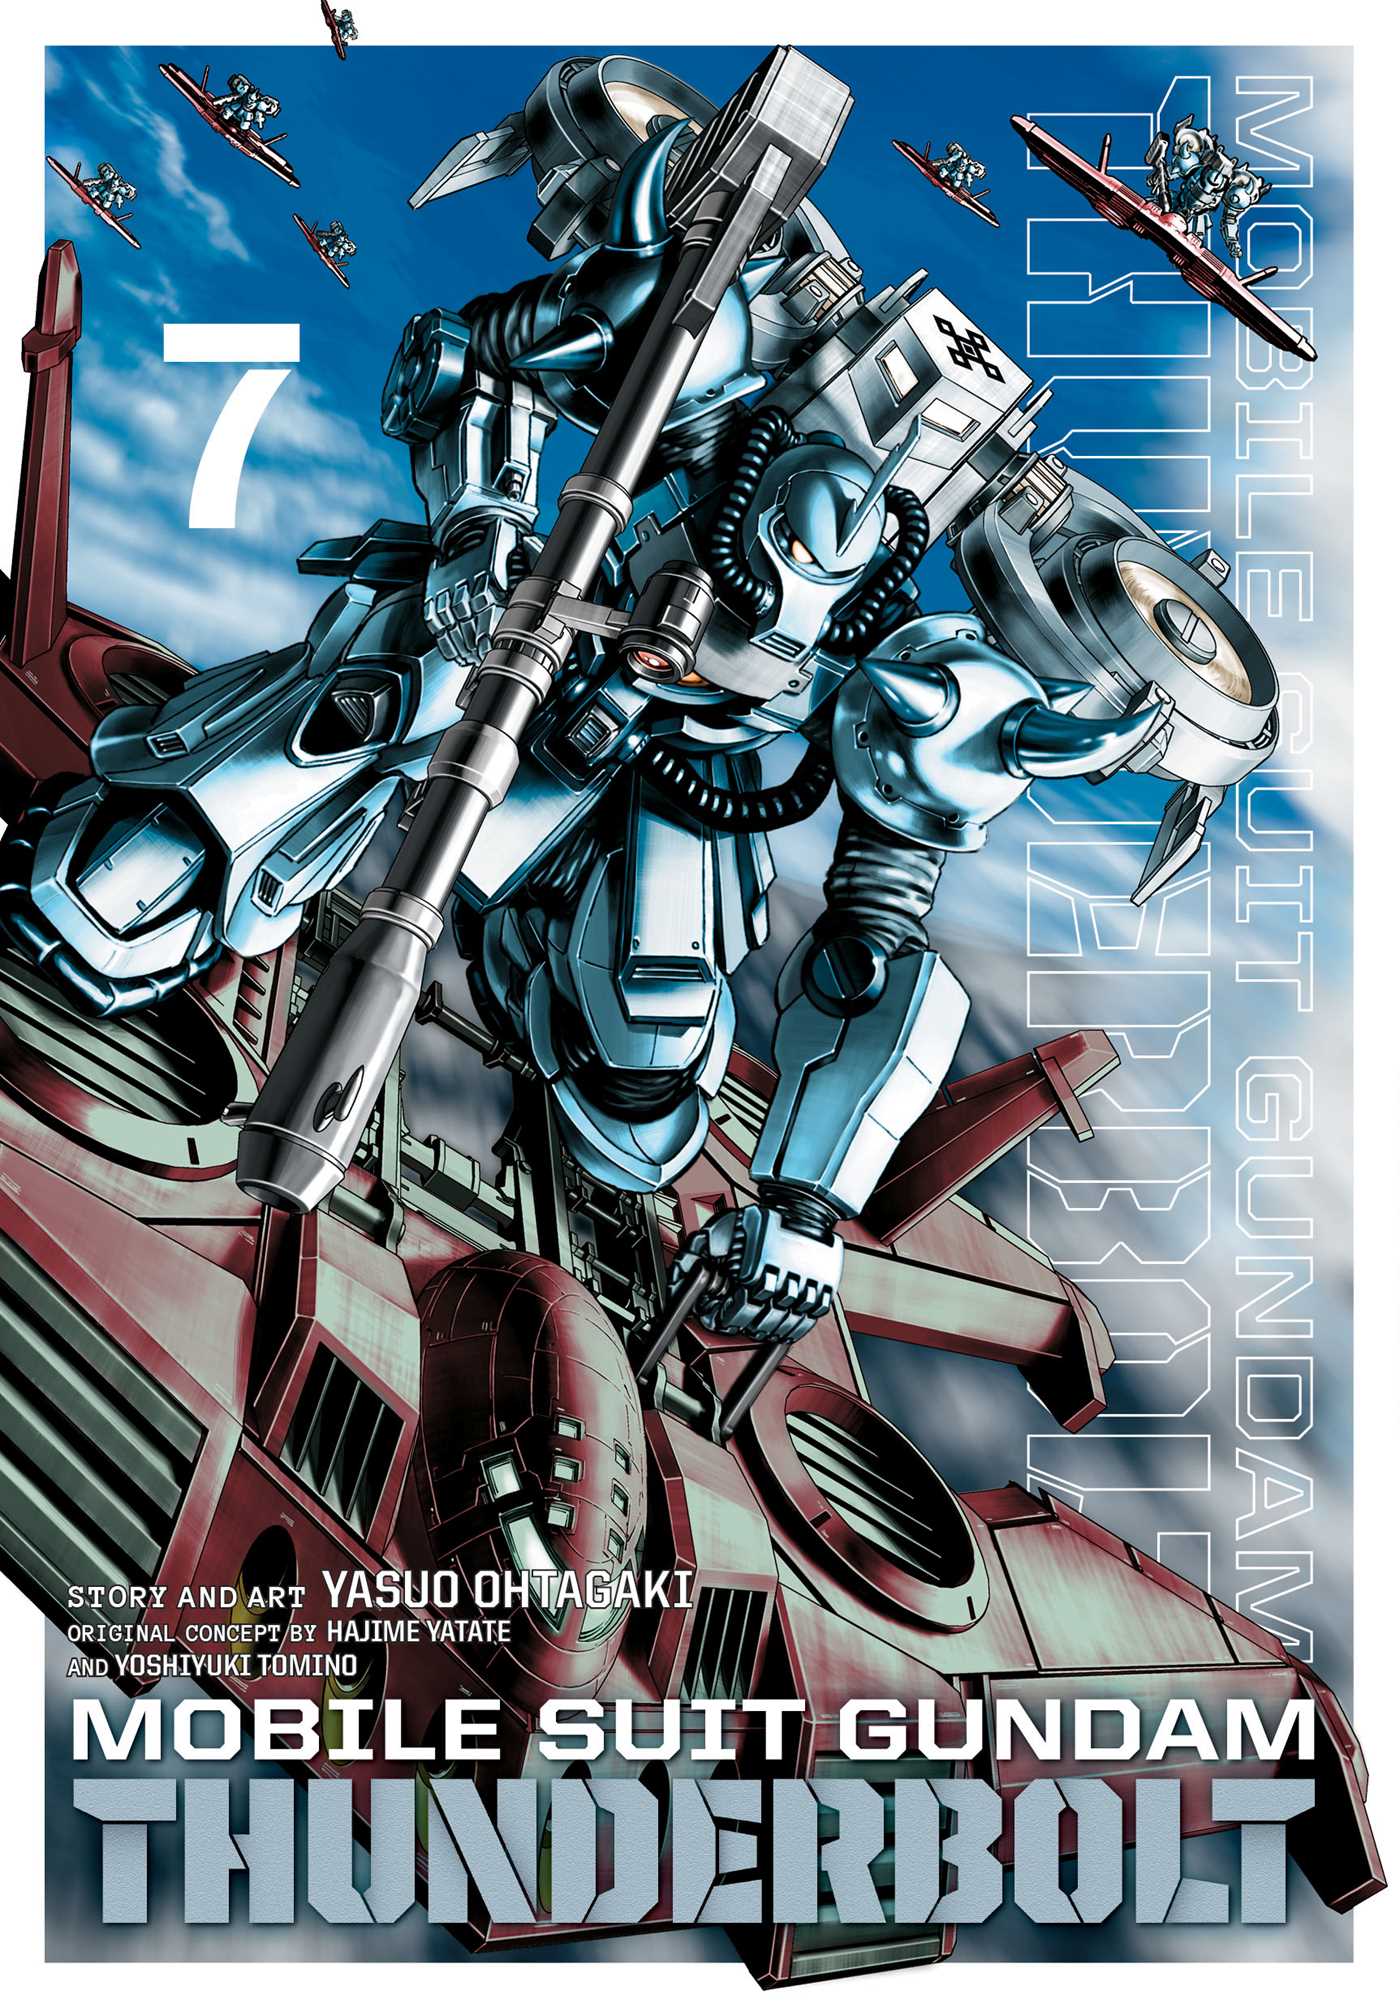 Mobile Suit Gundam Thunderbolt, Vol. 7 Review